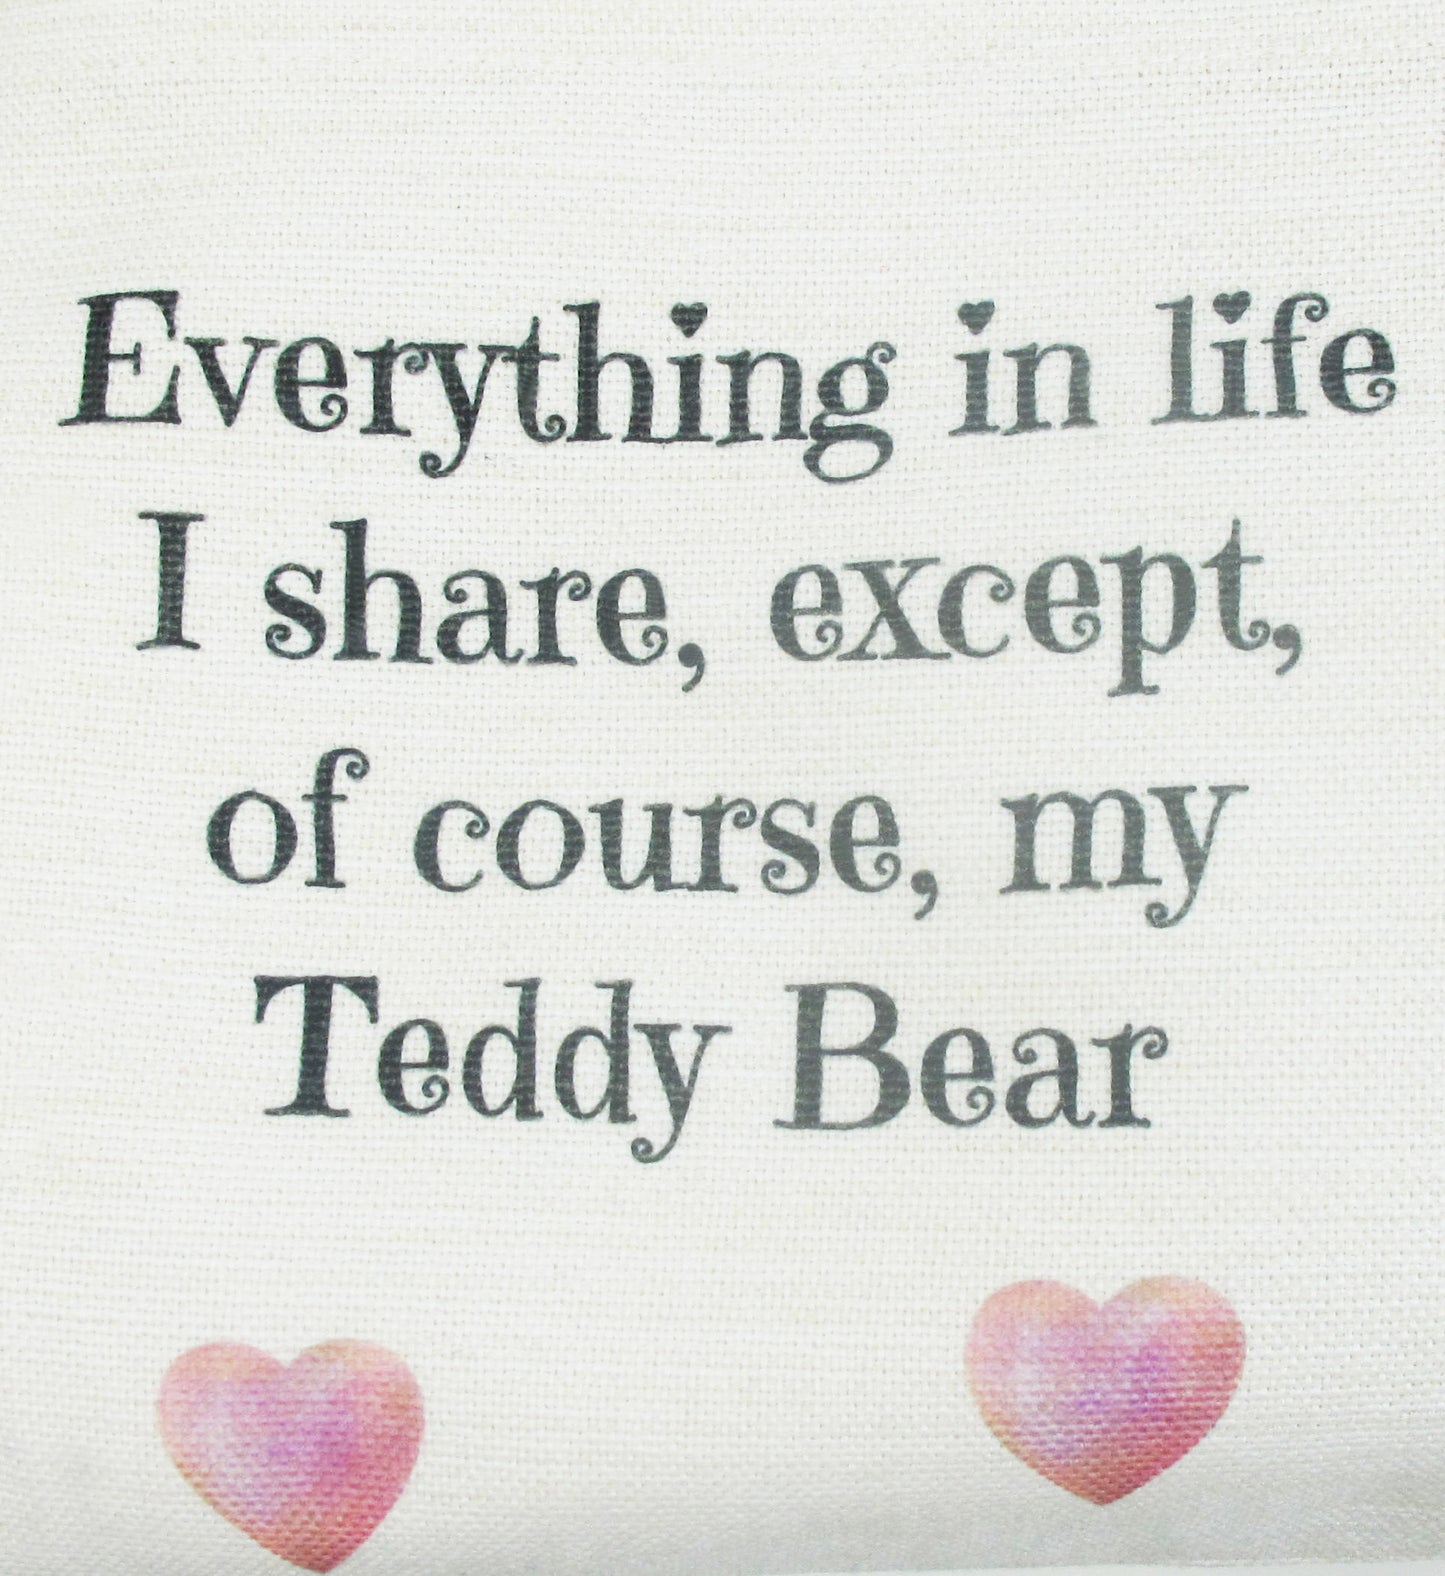 Dreams Pink Heart Cushion with Teddy Bear